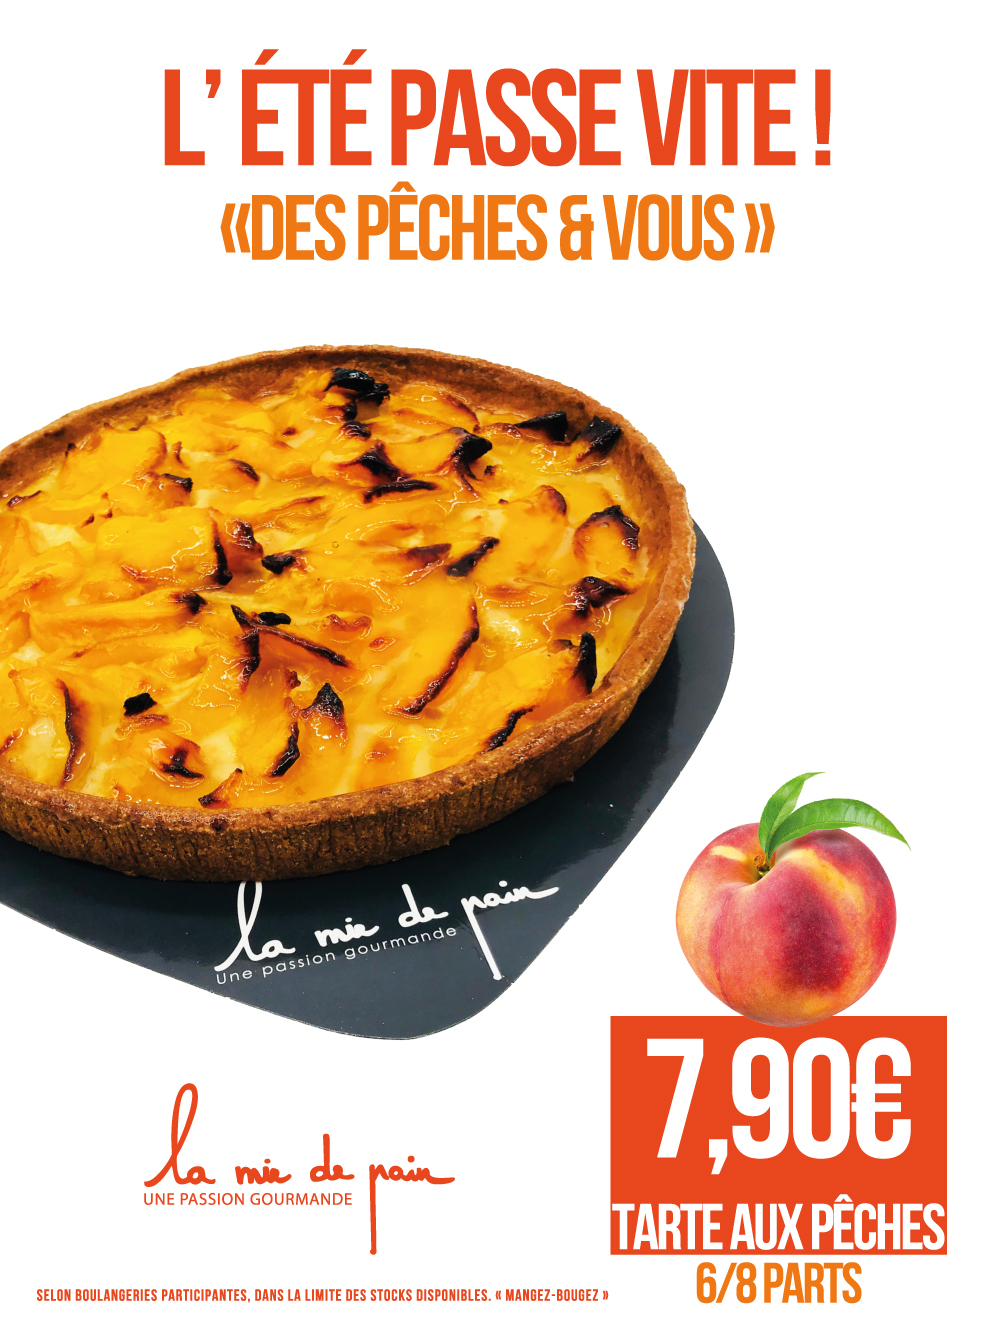 A1-tartes-aux-pêches-lamiedepain-summer2020